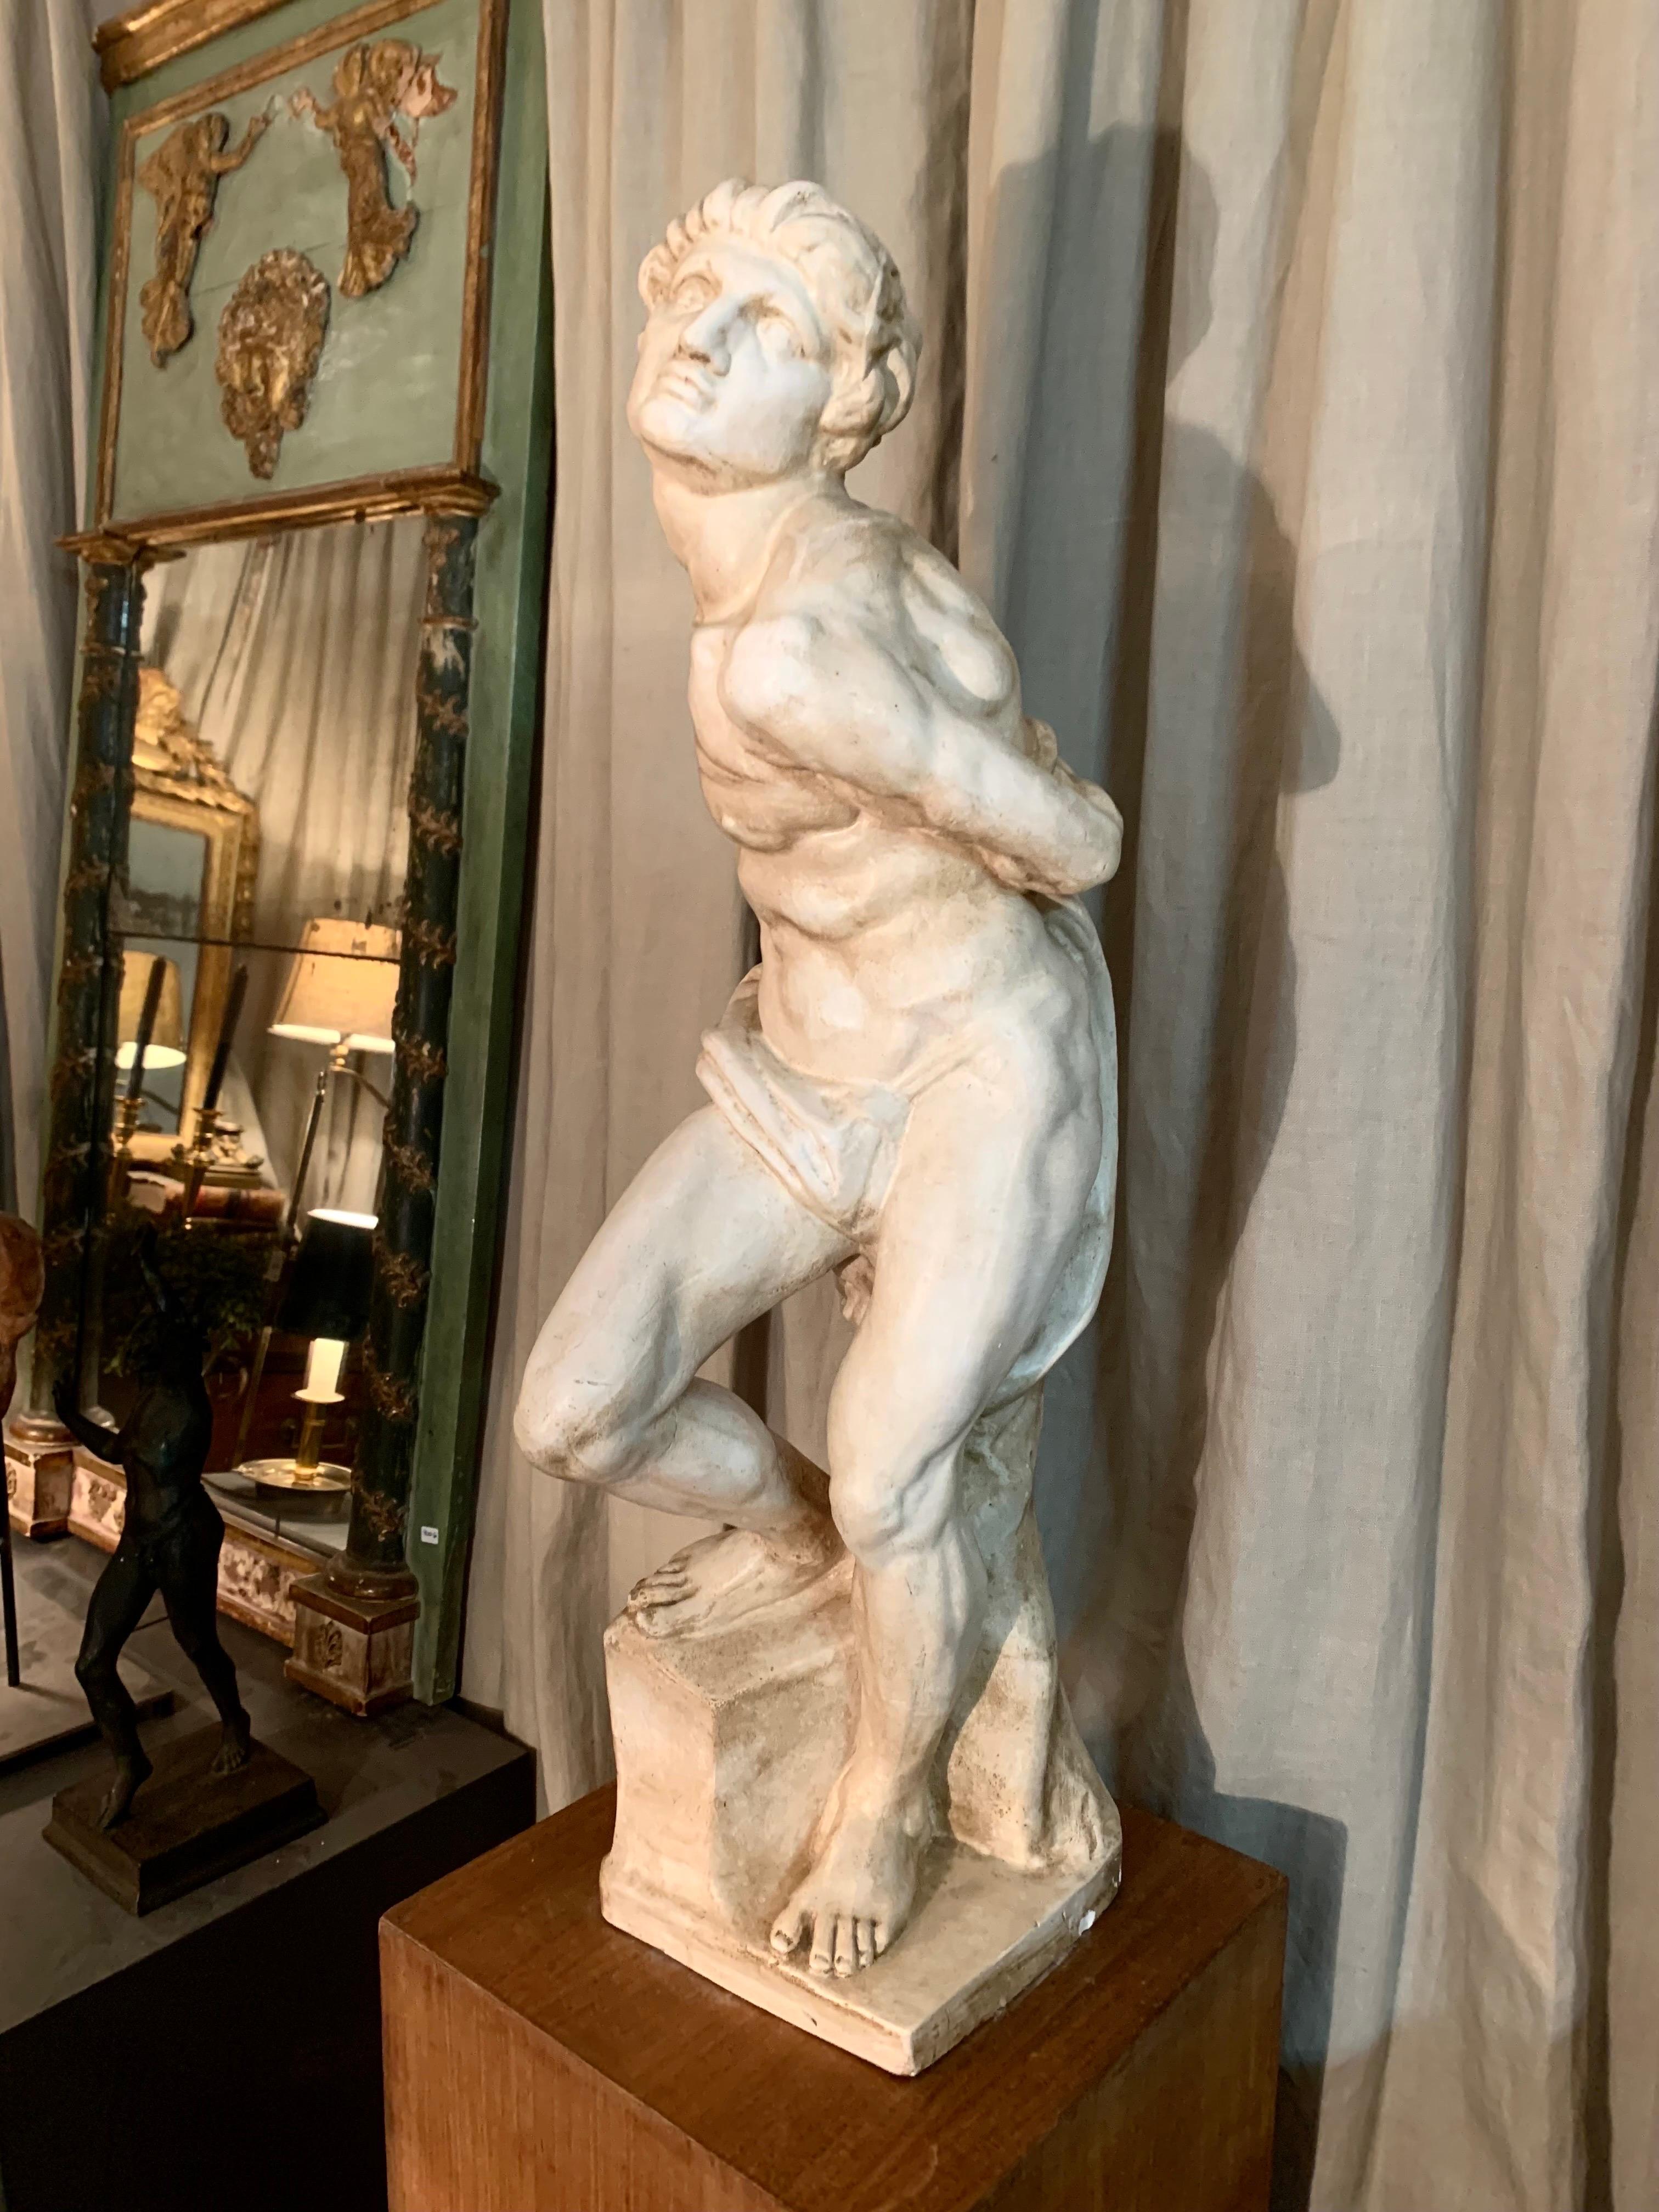 Eine Gipsskulptur, die Michelangelos berühmten Sklaven darstellt.
Diese Skulptur wurde an der Königlichen Schule der Schönen Künste von San Fernando geformt. Madrid, Spanien.
Es ist ein Werk von großer Qualität, es hat eine leichte Patina, und sein